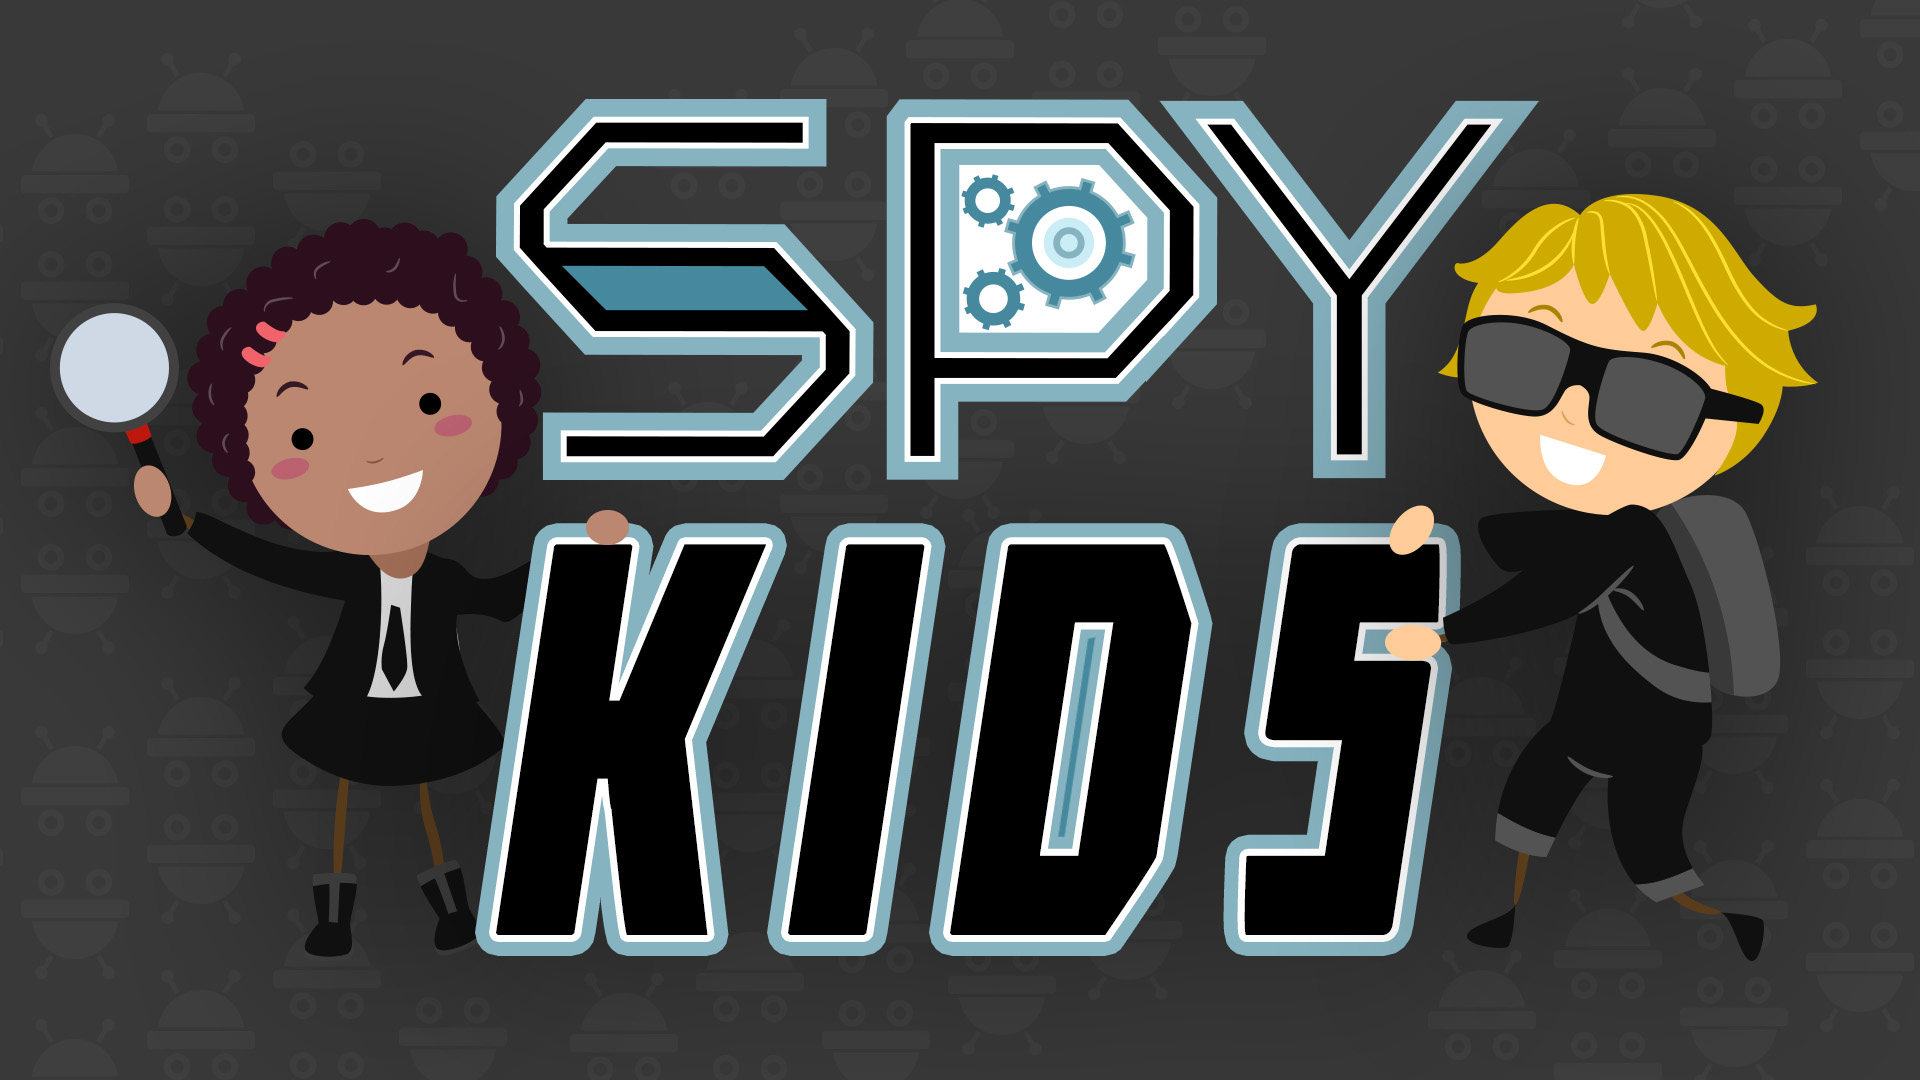 Spy Kids Logo